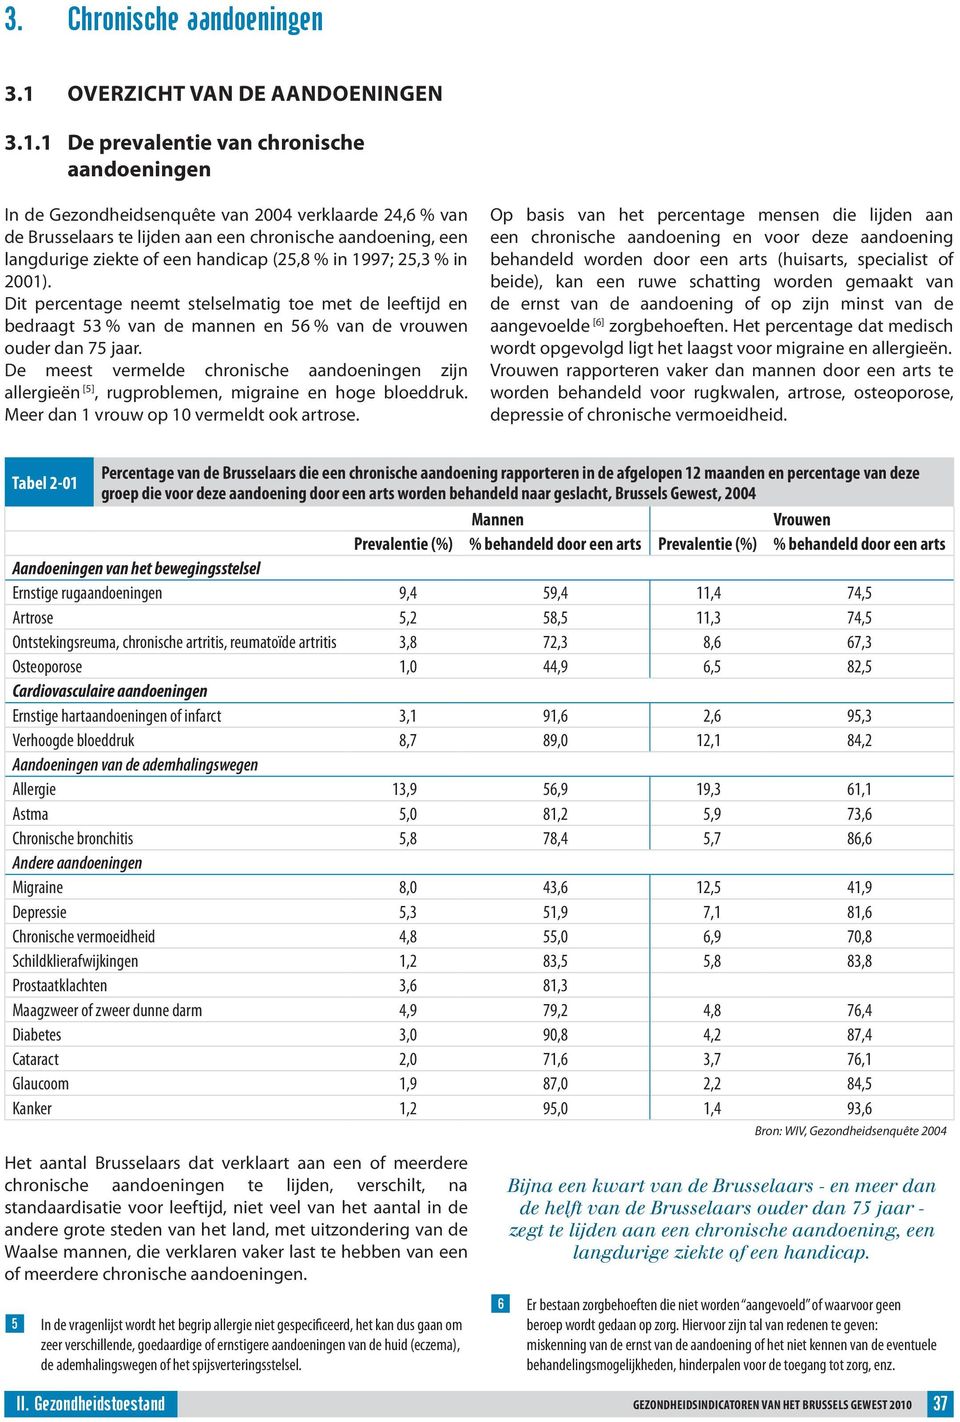 1 De prevalentie van chronische aandoeningen In de Gezondheidsenquête van 24 verklaarde 24,6 % van de Brusselaars te lijden aan een chronische aandoening, een langdurige ziekte of een handicap (25,8